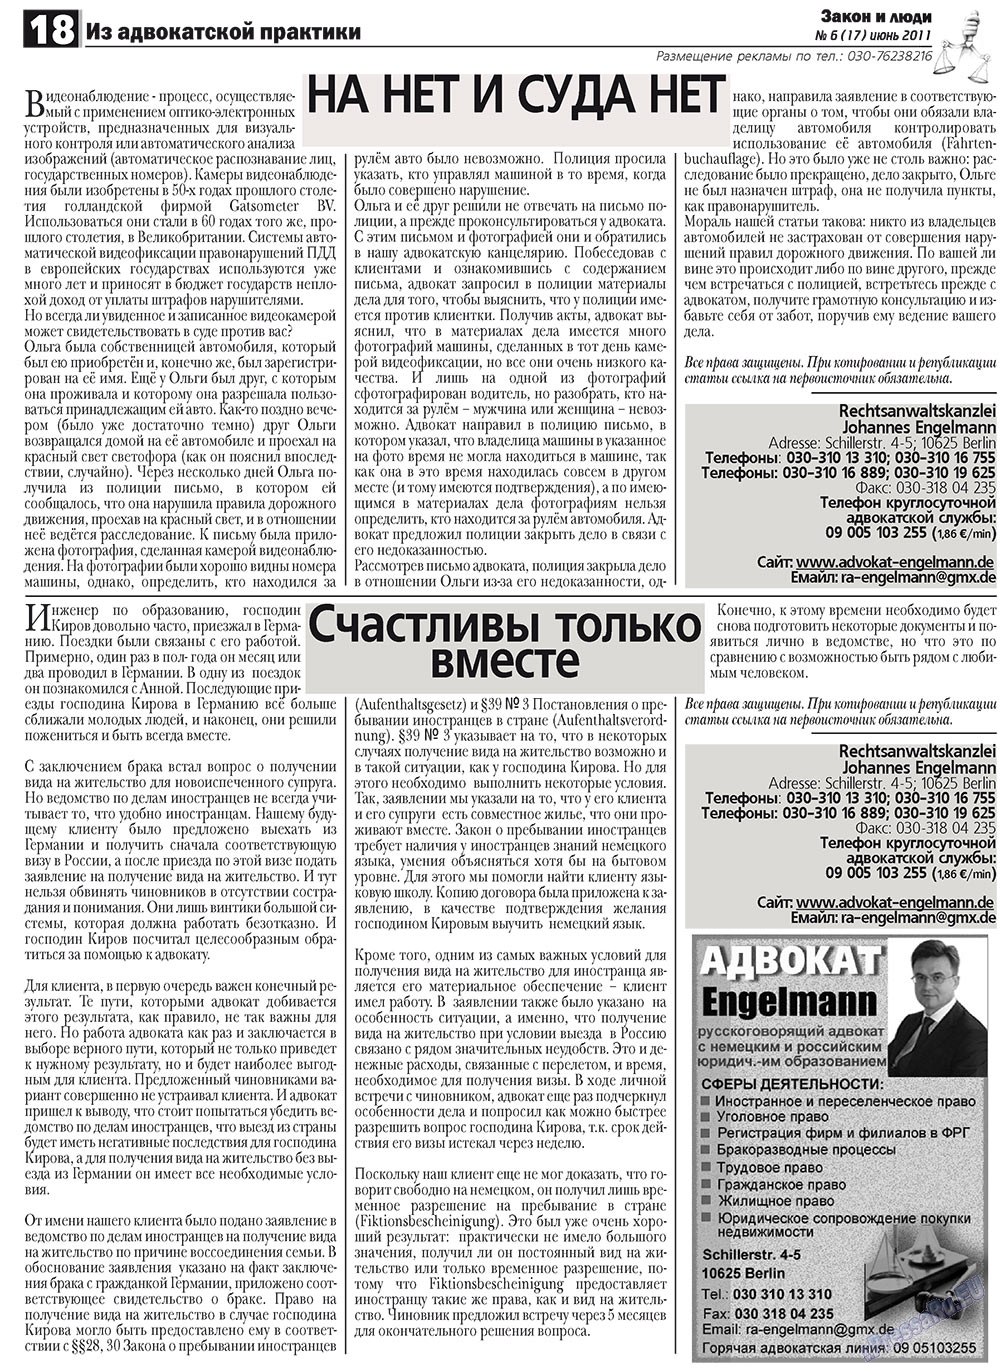 Закон и люди, газета. 2011 №6 стр.18